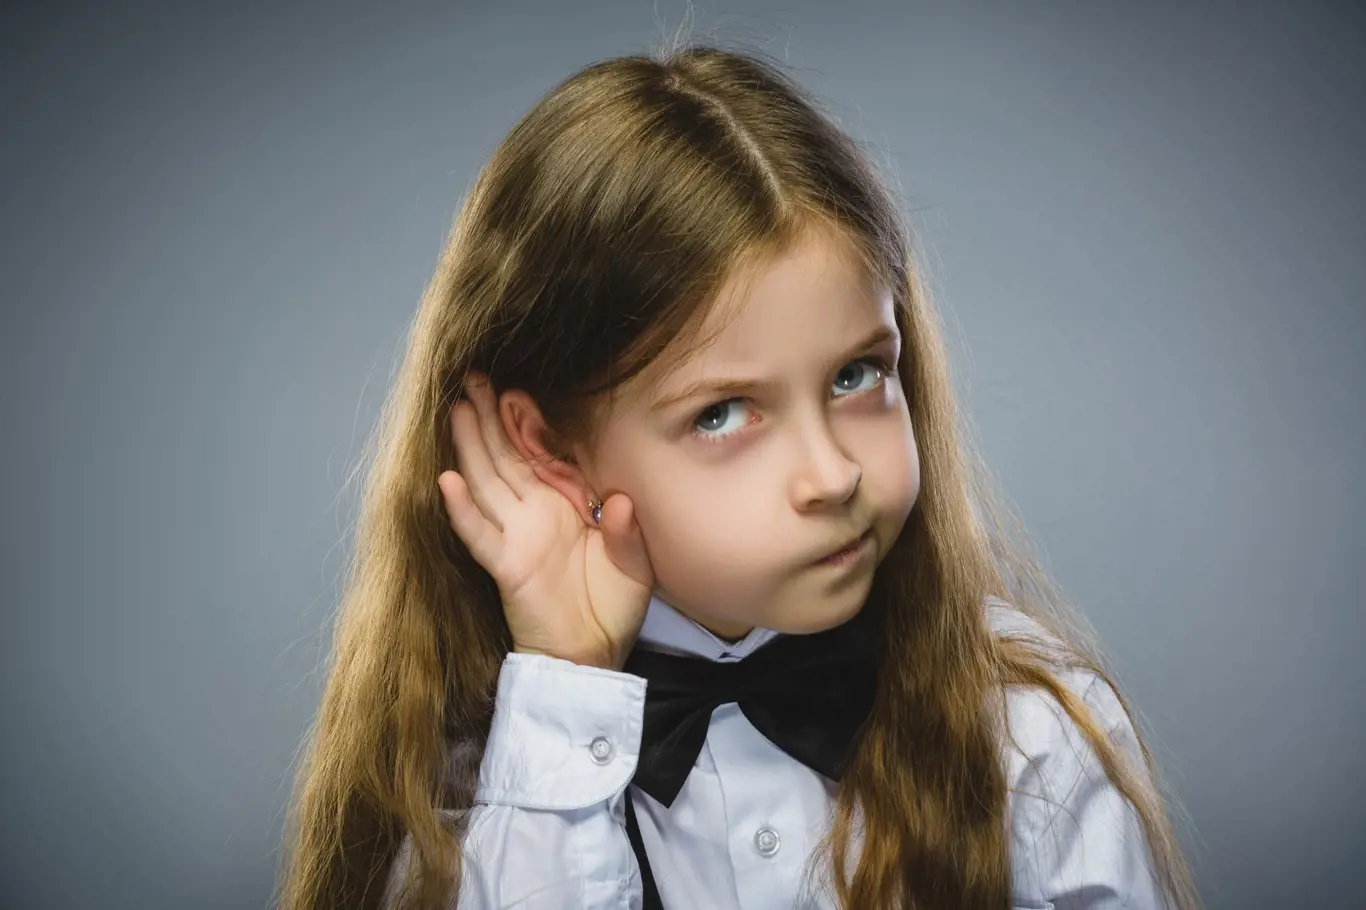 Děti, které špatně slyší, se mohou vyvíjet mnohem pomaleji než jejich vrstevníci. Sluch dítěte můžete nechat vyšetřit hned v porodnici.